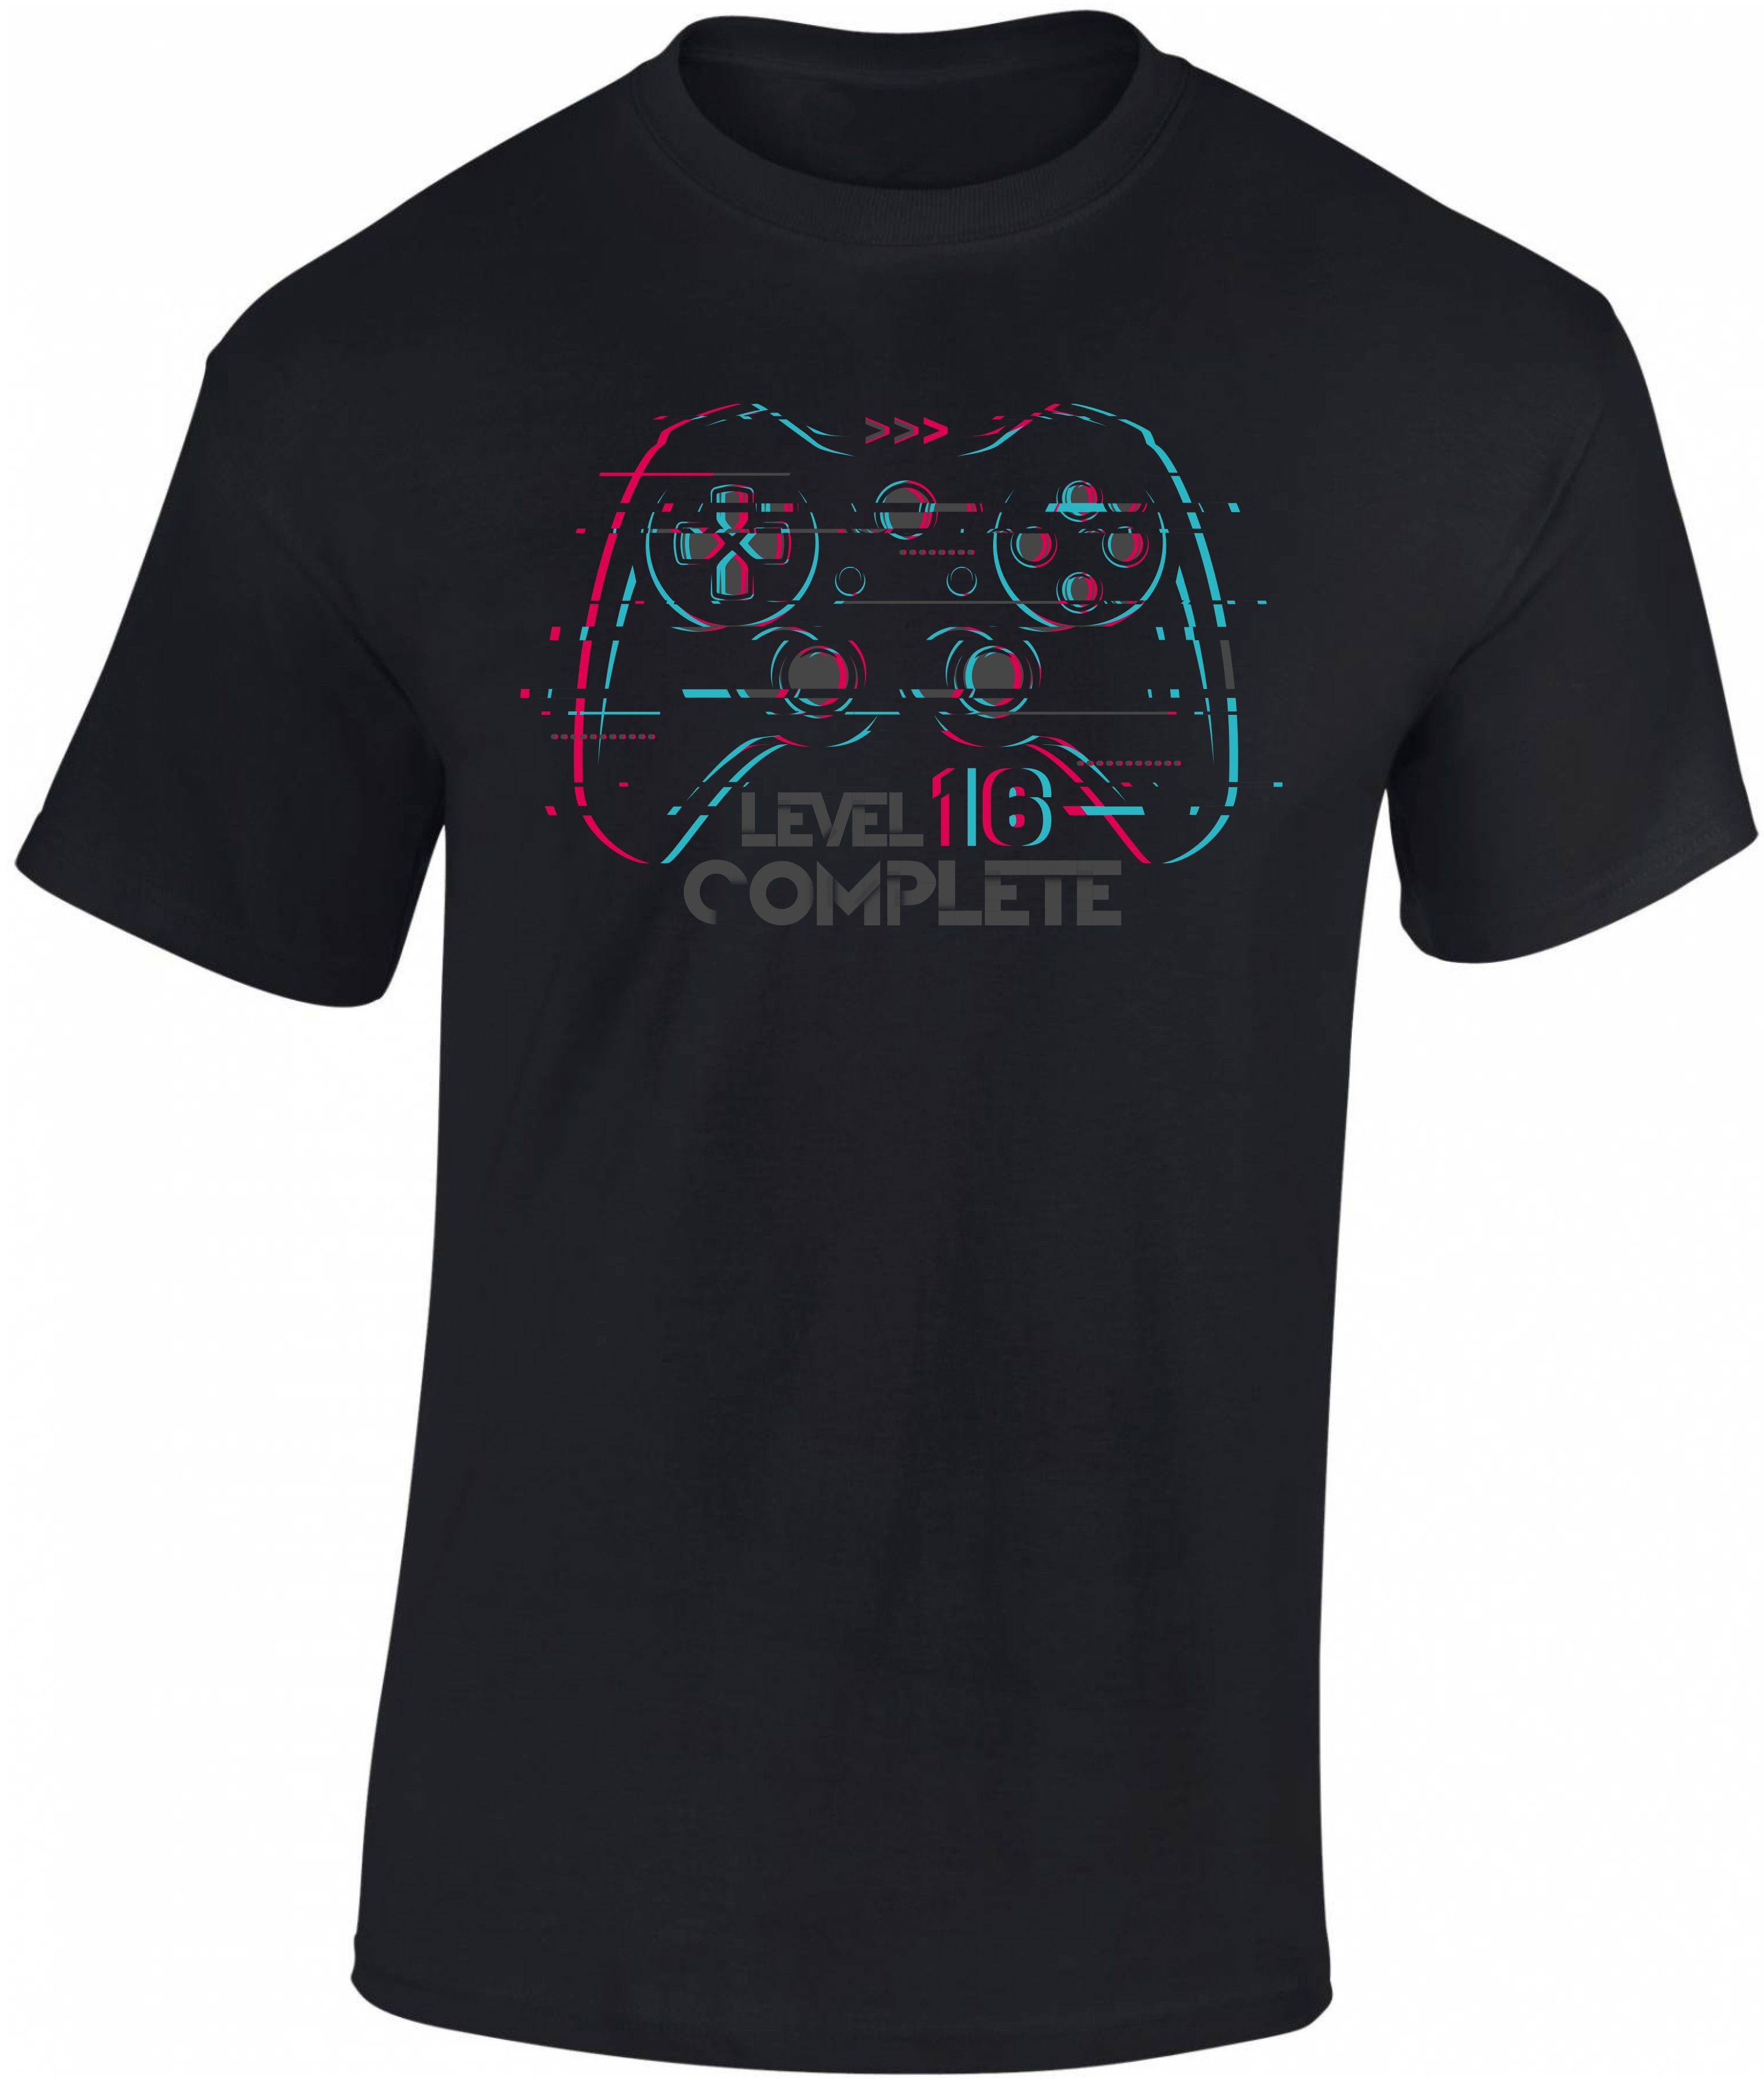 Baddery Print-Shirt Jungen Gamer T-Shirt zum 16. Geburtstag : Level 16 Complete, hochwertiger Siebdruck, aus Baumwolle